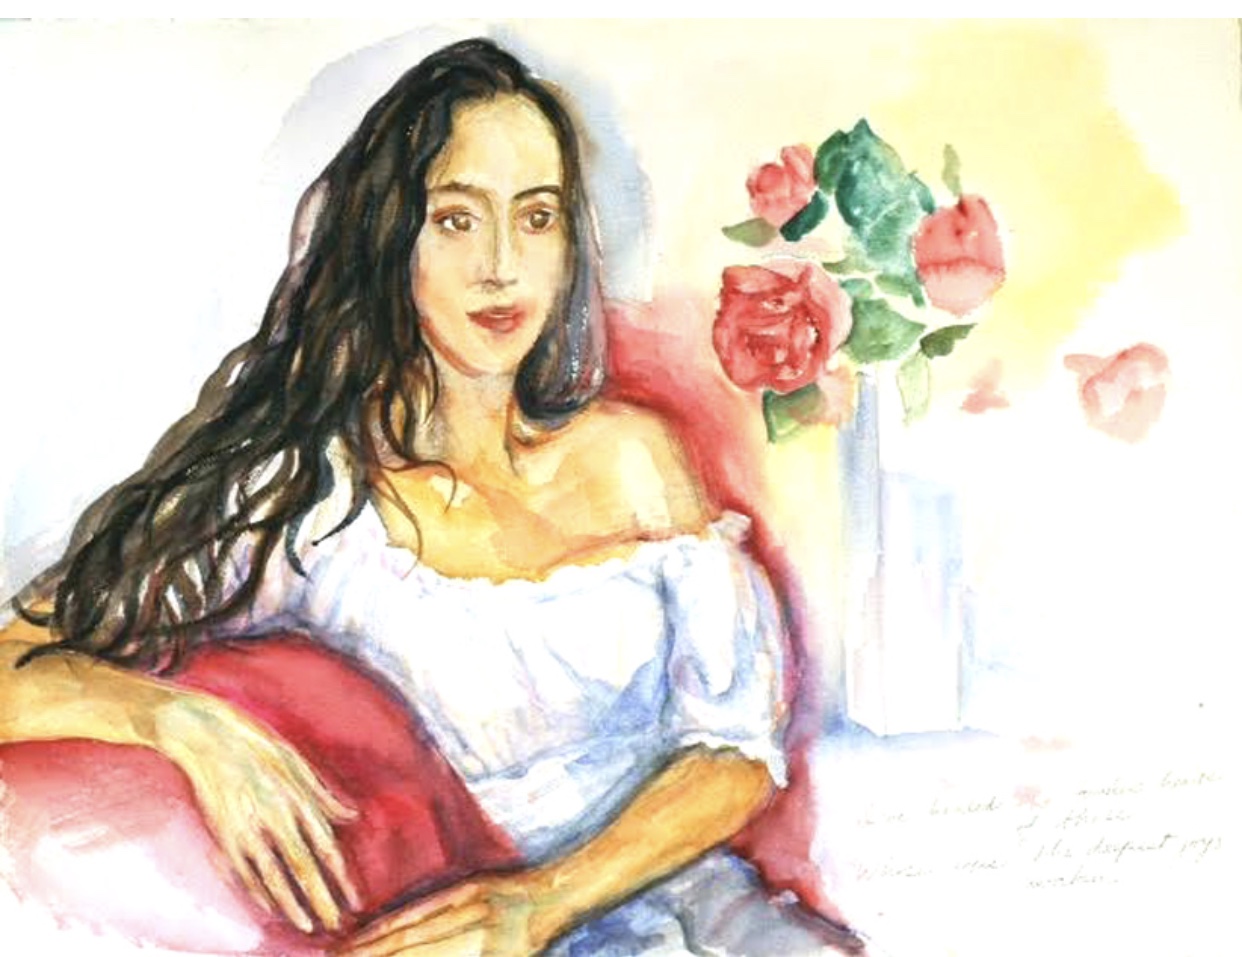 L'art du portrait d'une femme assise sur un canapé rouge représenté à l'aquarelle.